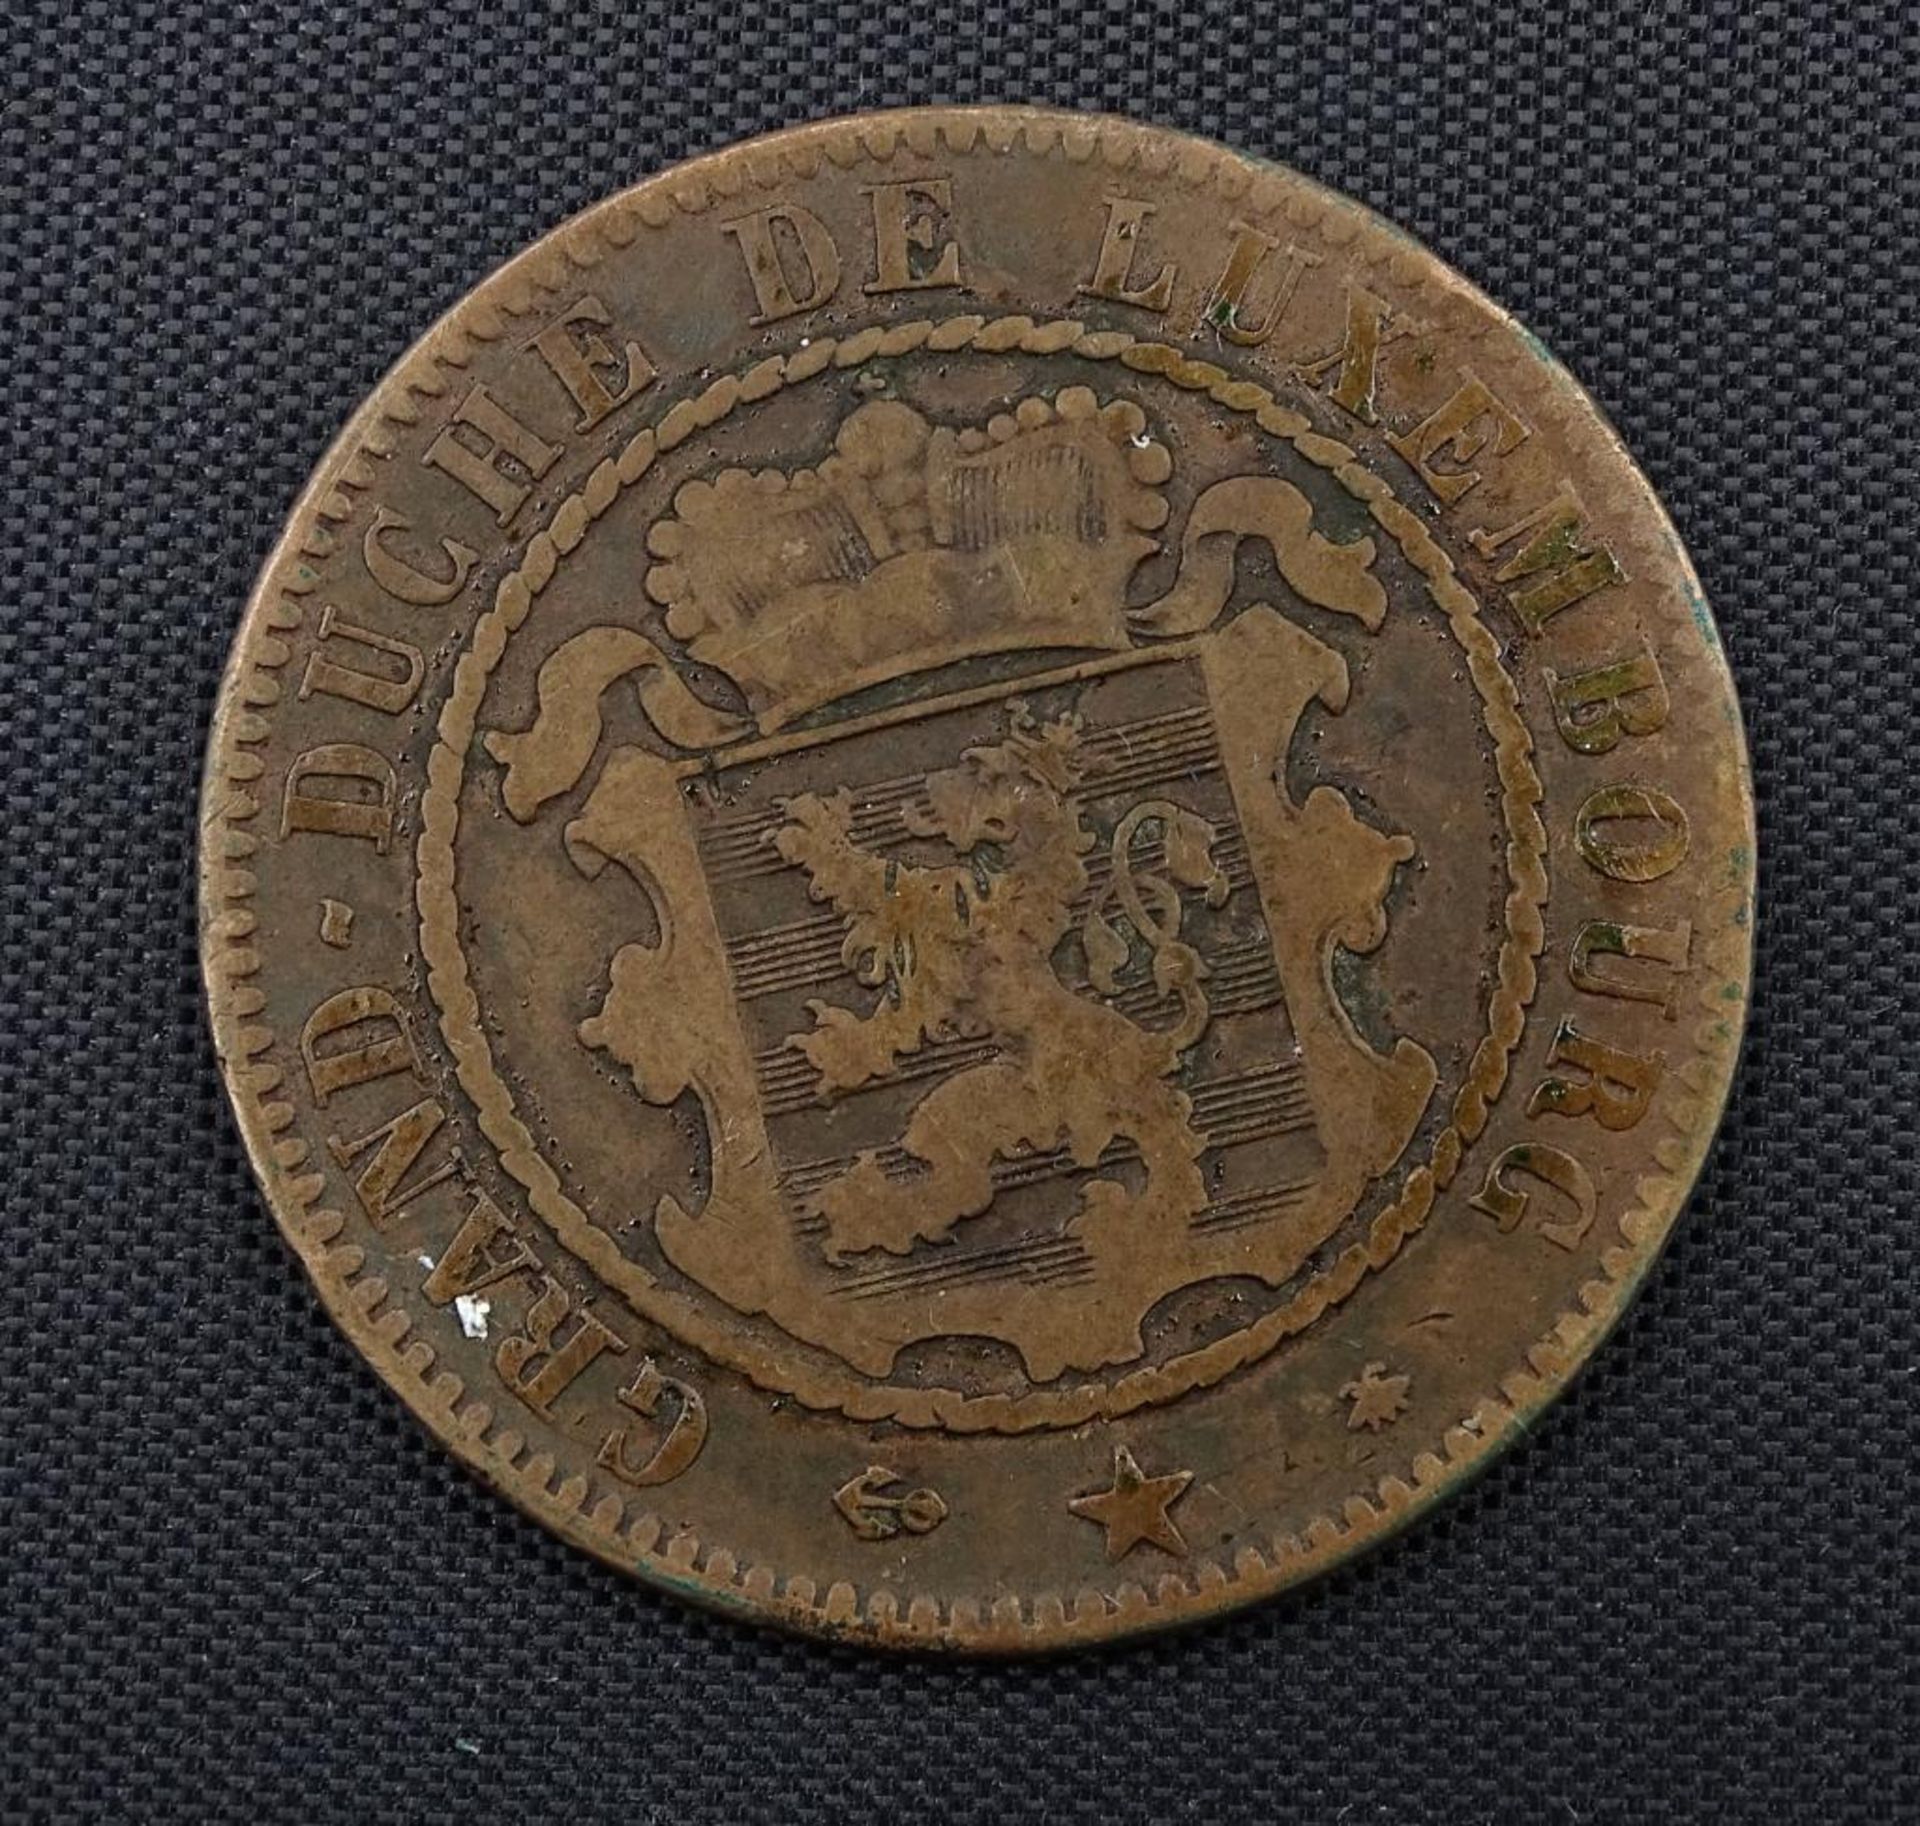 10 Centimes 1865, Grand Duche de Luxembourg - Image 2 of 2